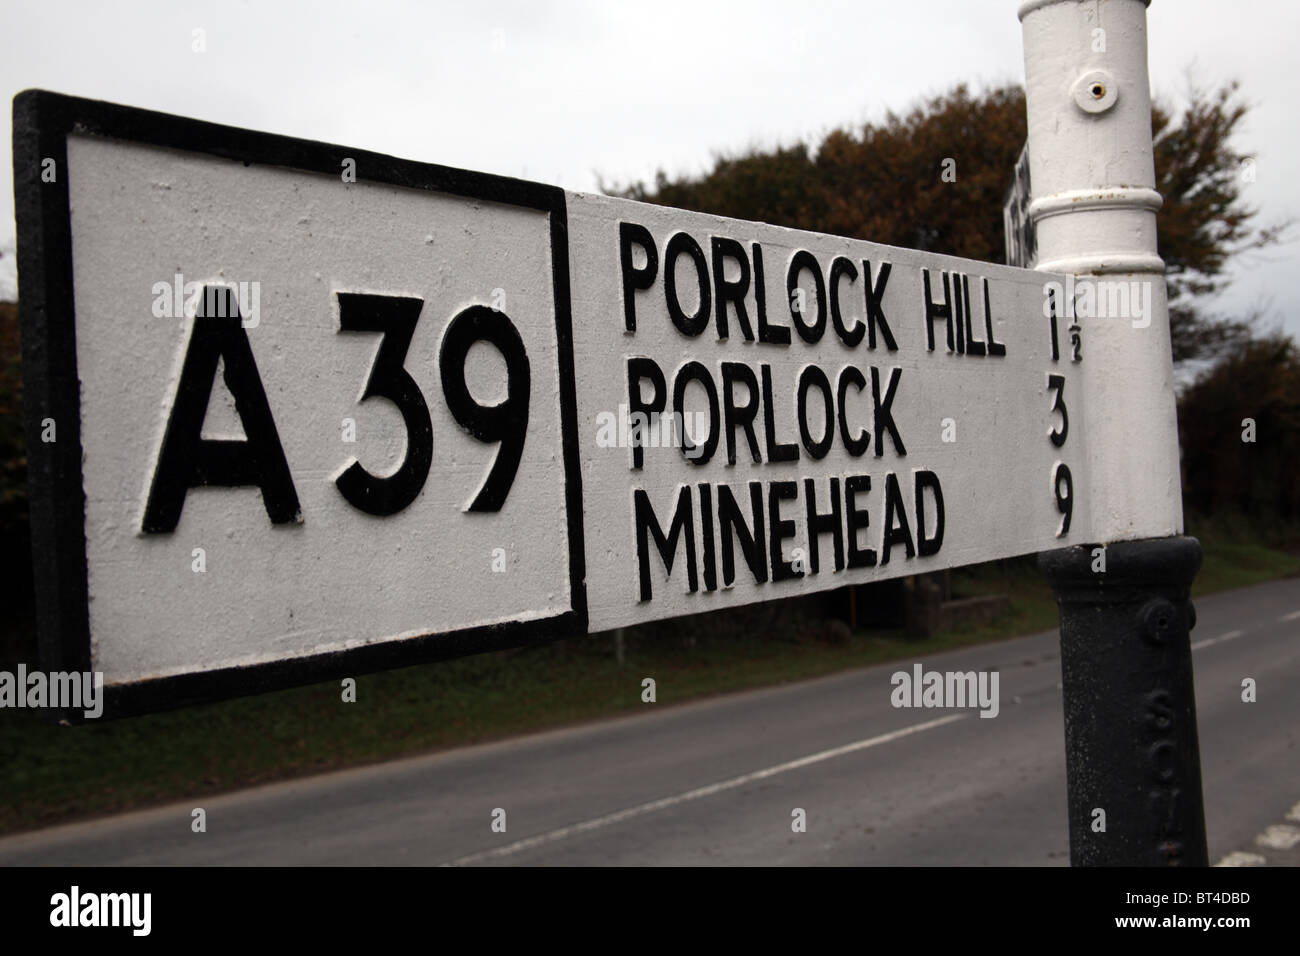 La route à l'ancienne direction, Porlock Hill, Somerset, Angleterre Banque D'Images